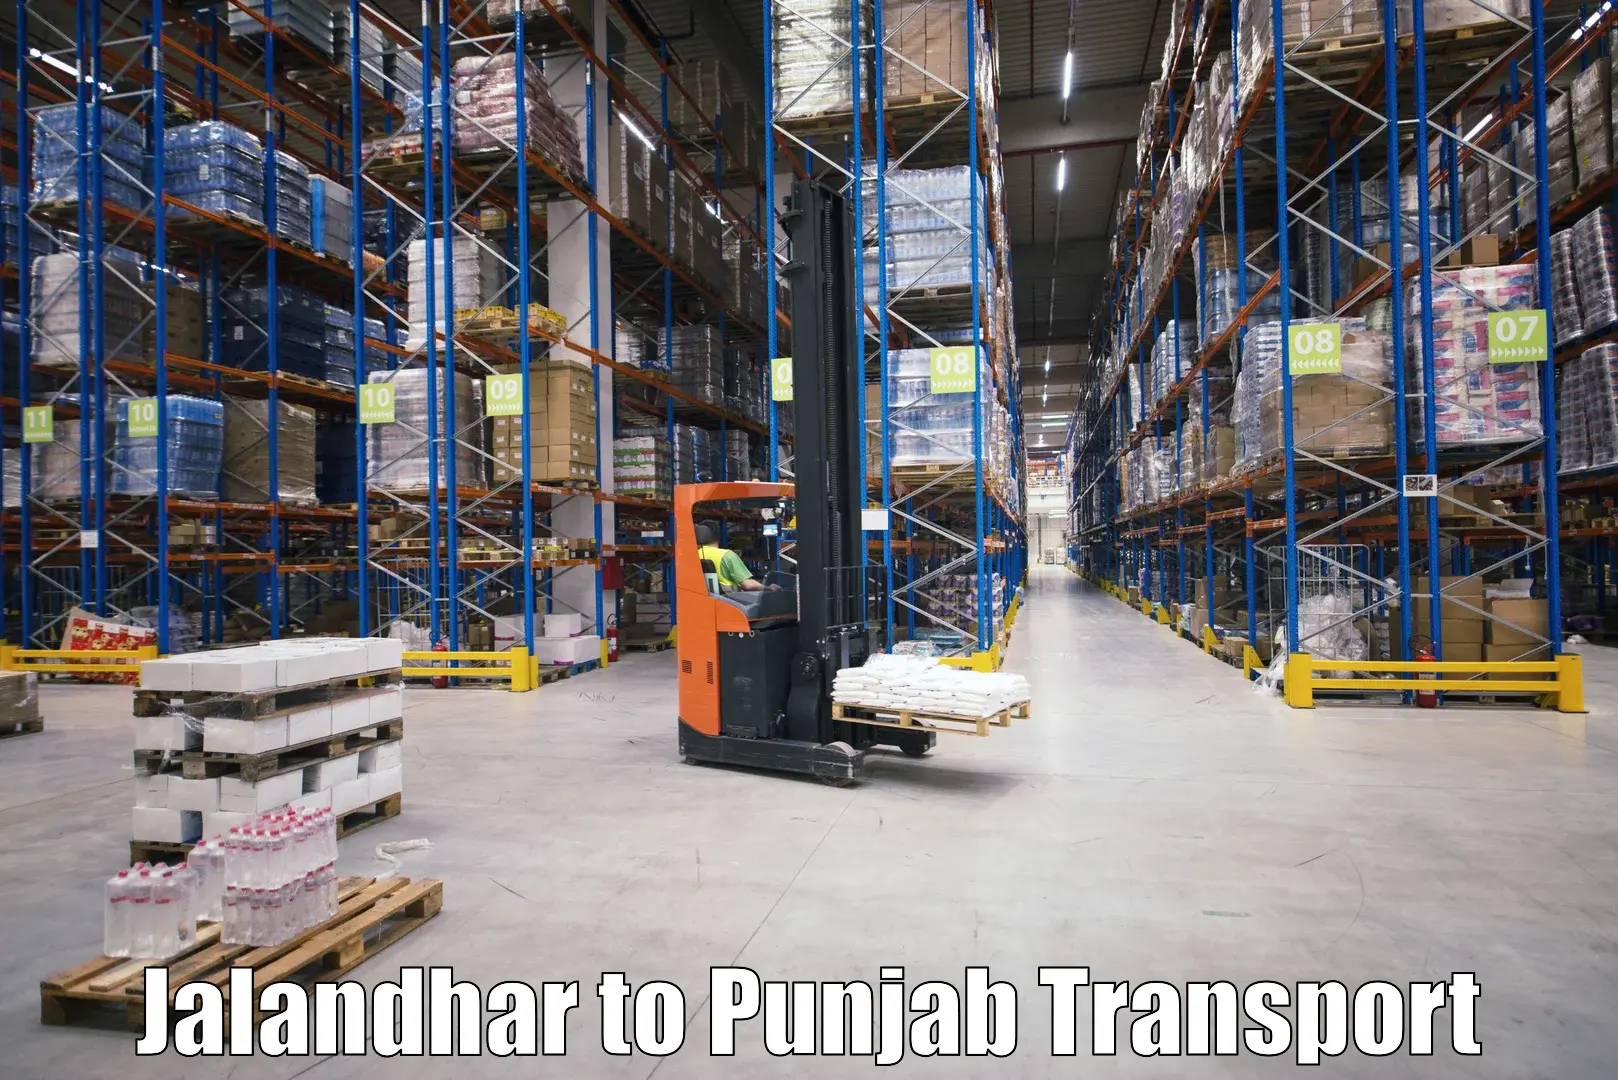 Parcel transport services Jalandhar to Amritsar